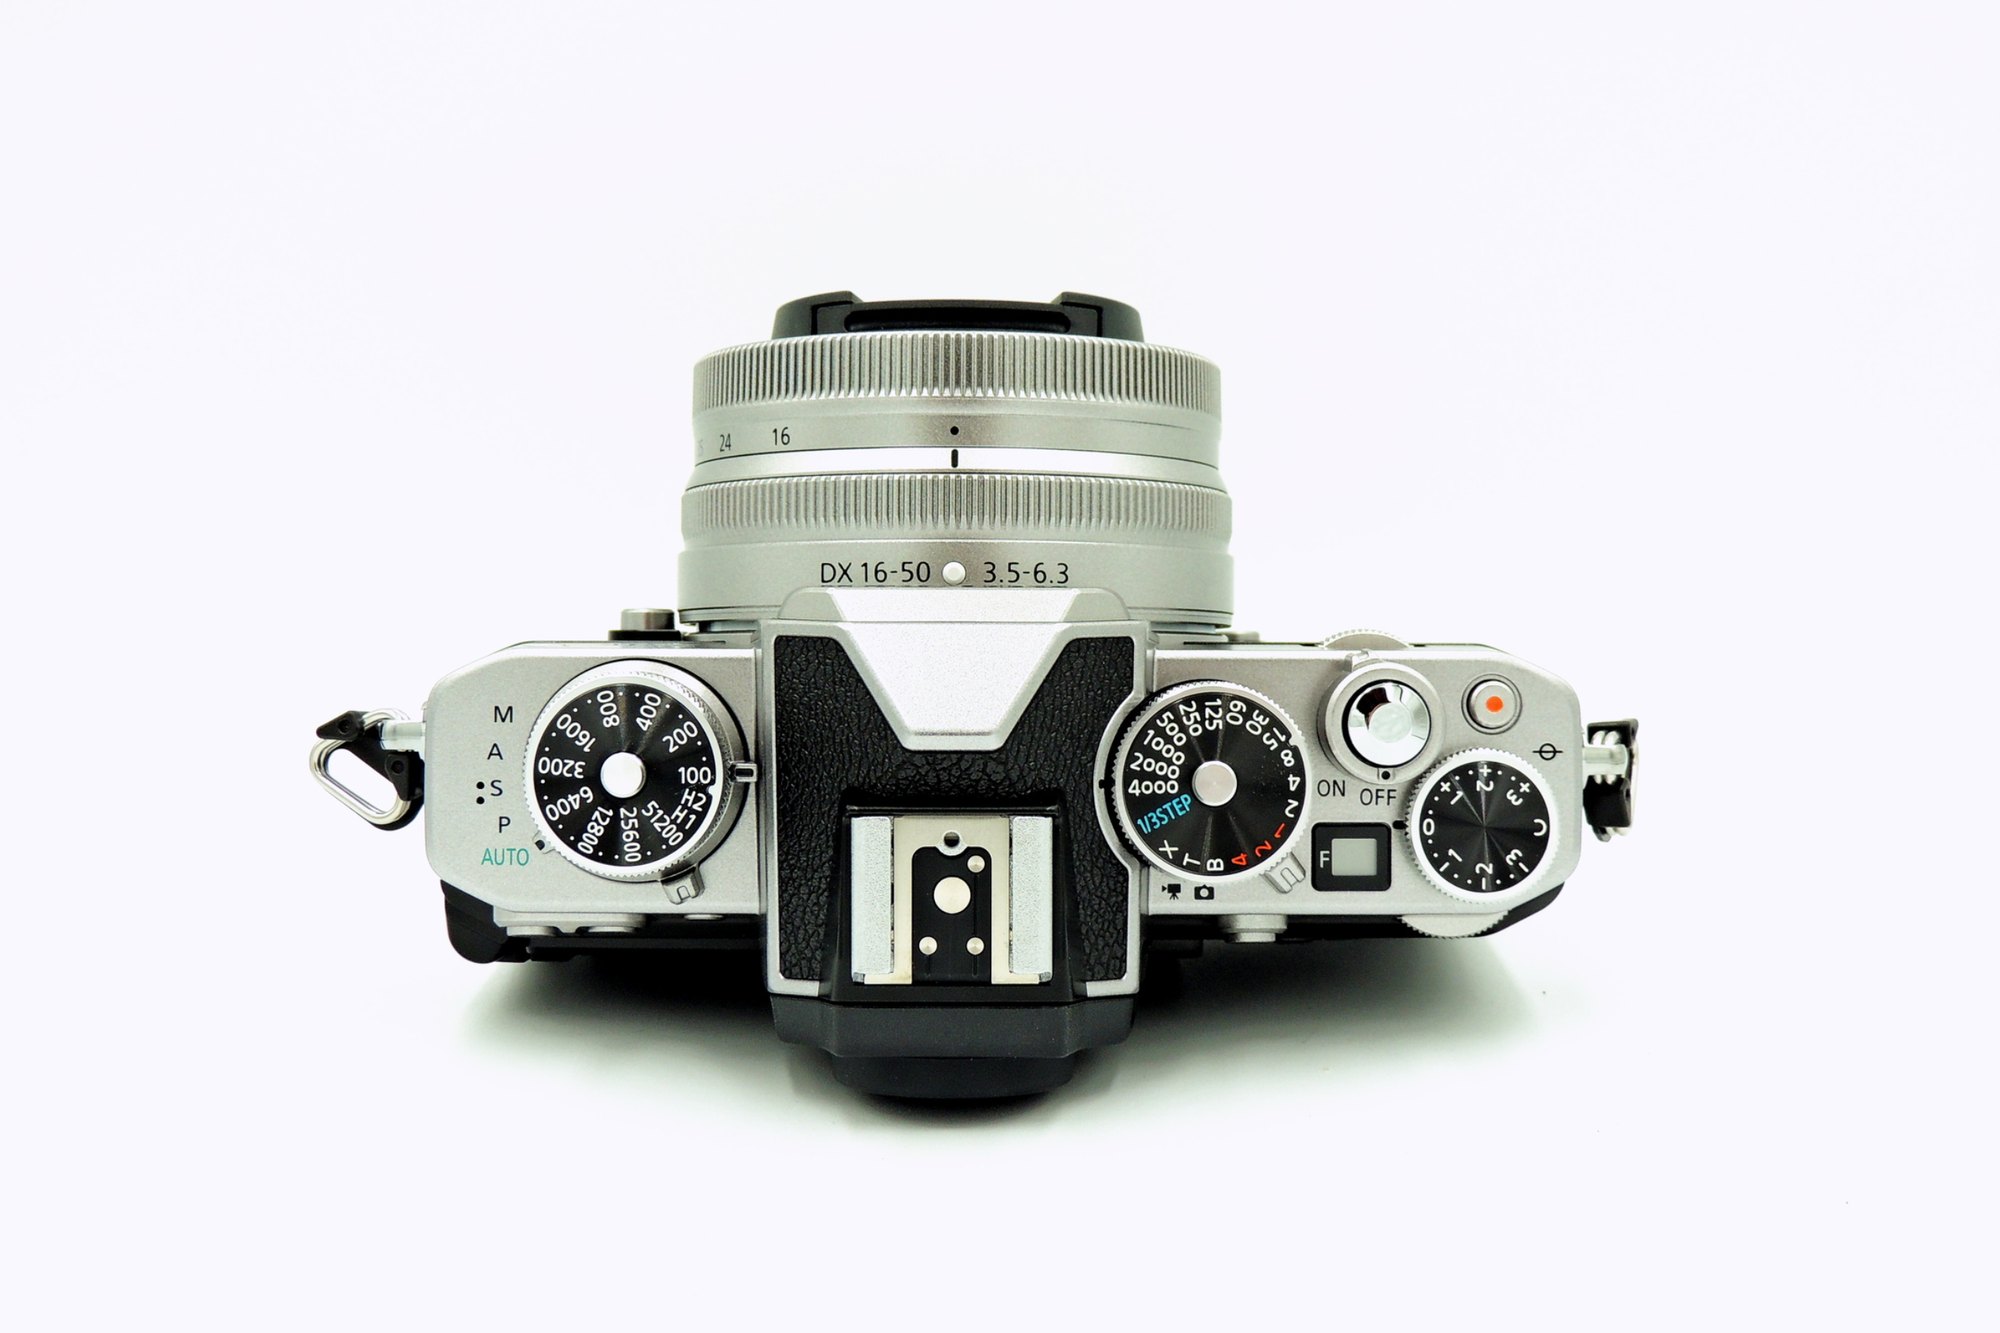 Systemkamera oder Spiegelreflex kaufen? DSLR oder DSLM - Welches System ist besser für Fotografen?